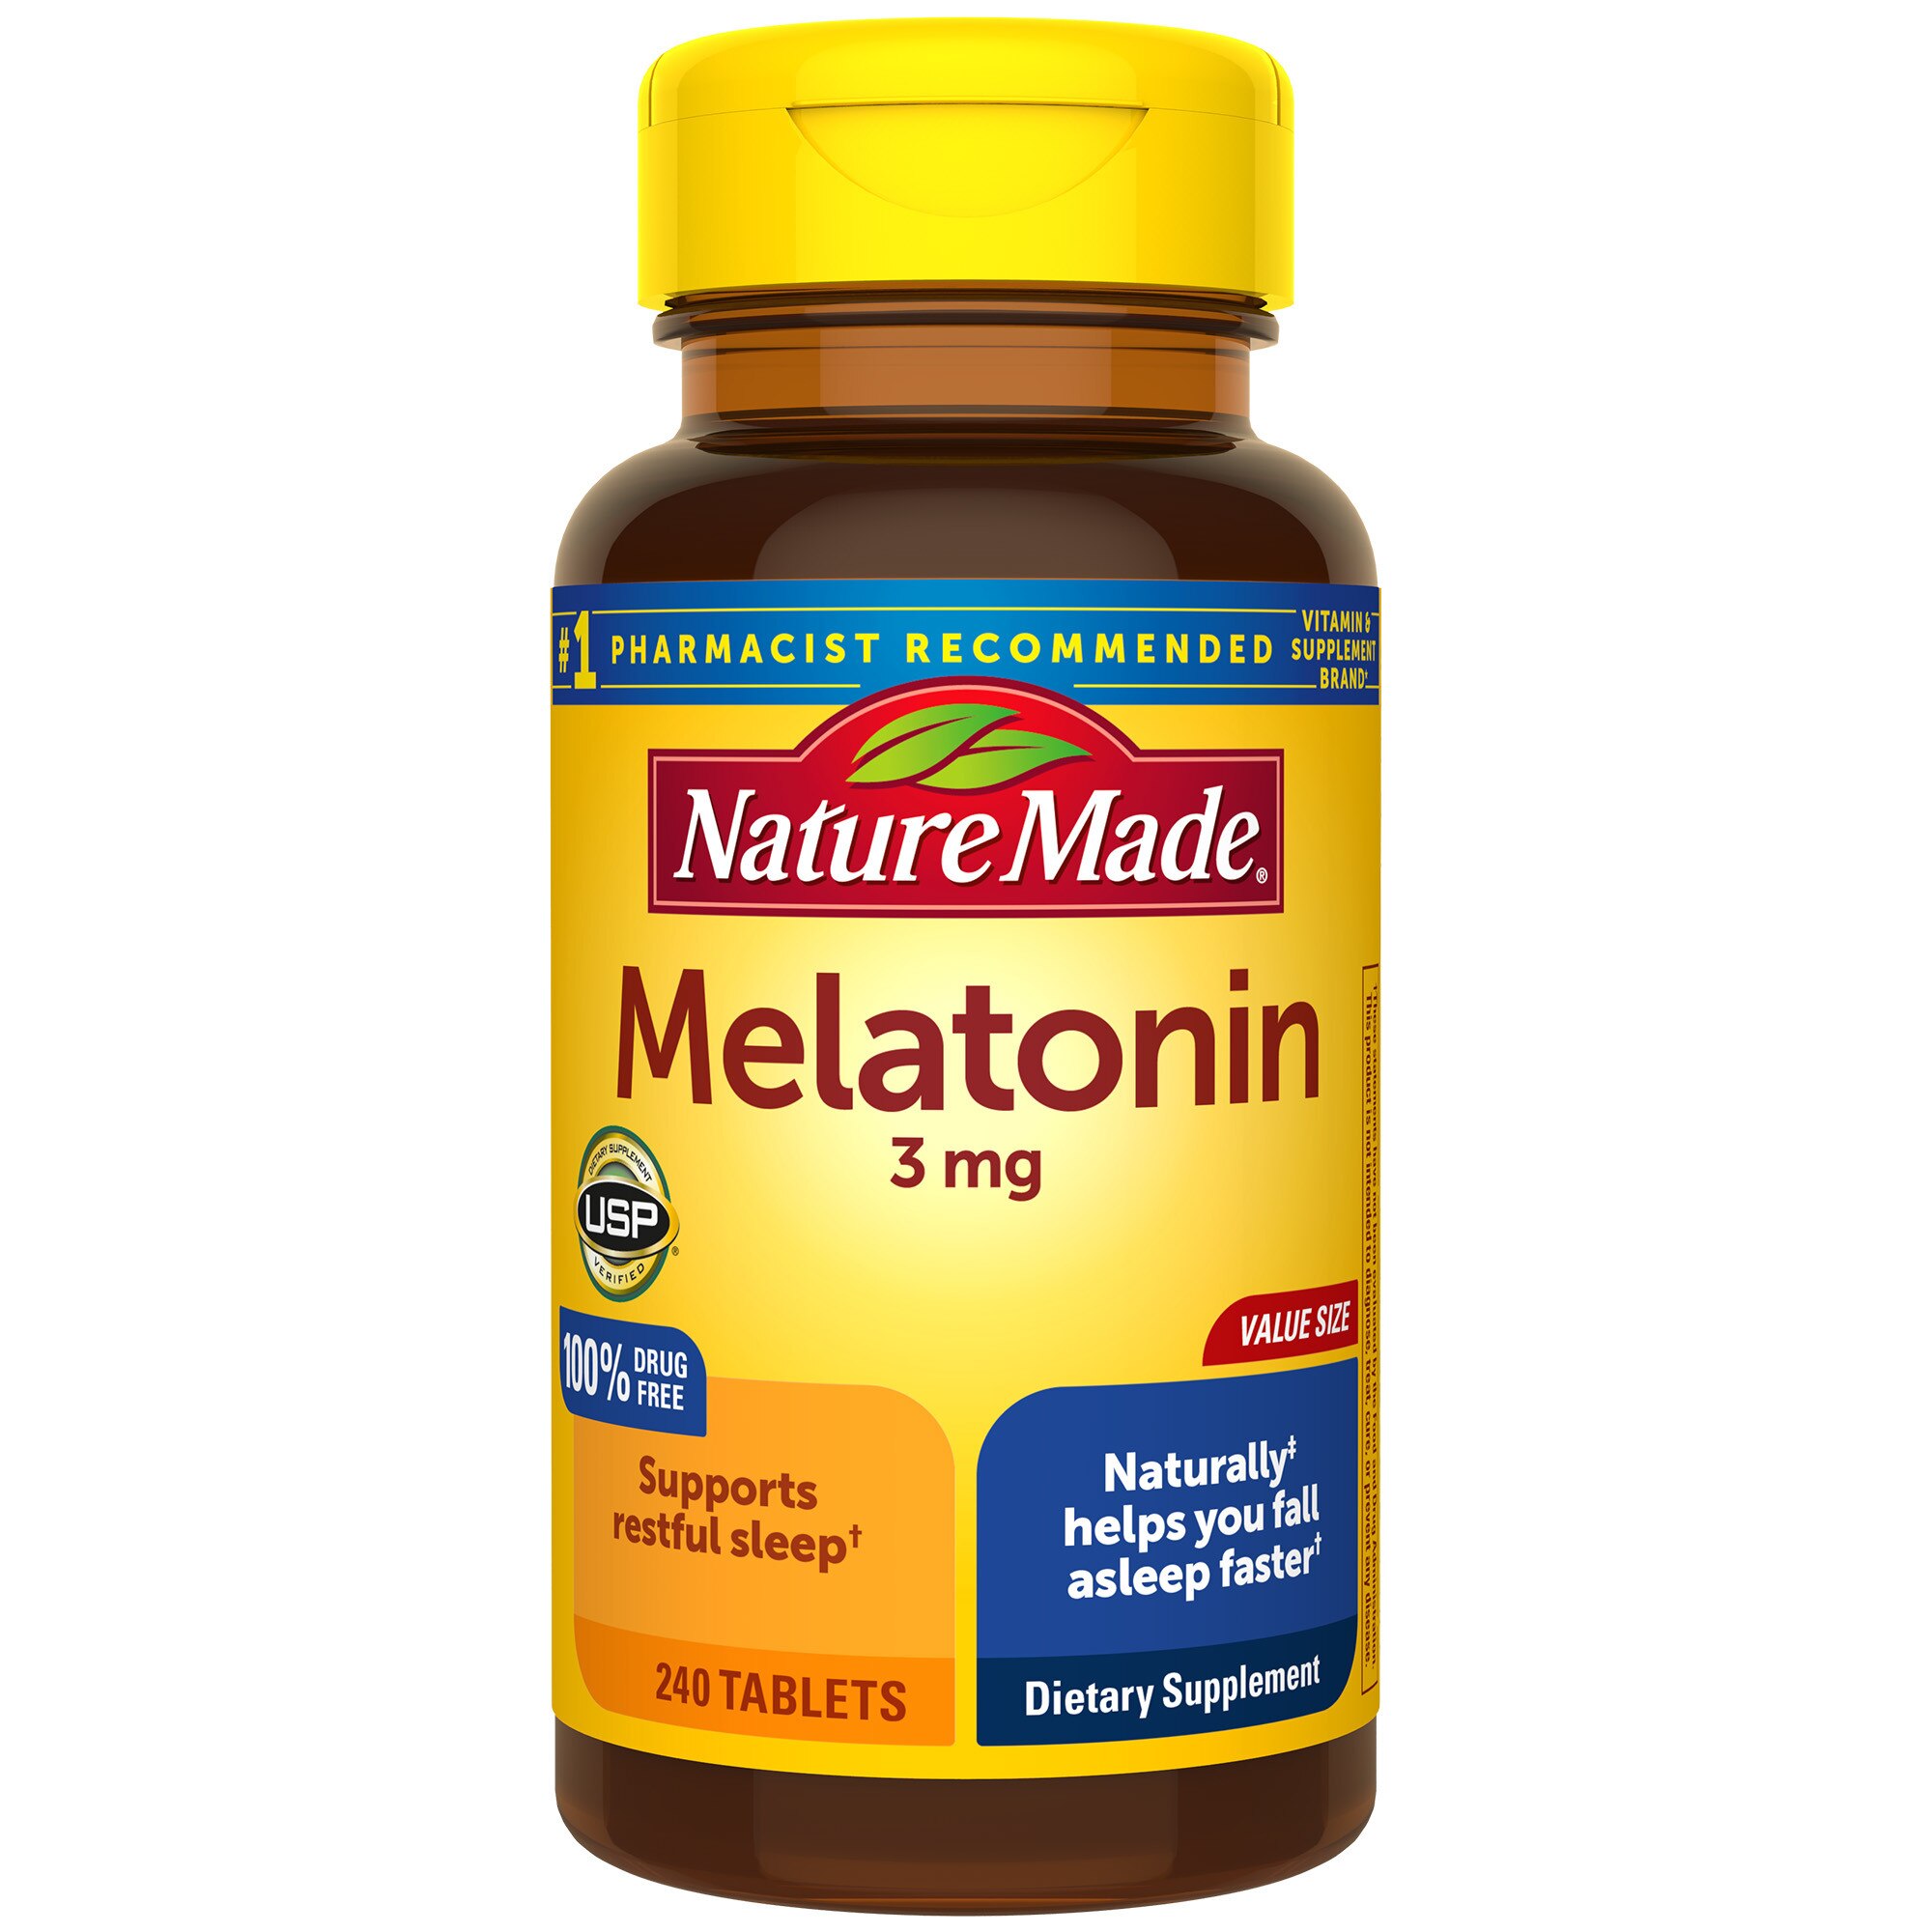 Nature Made Melatonin 3 mg Tablets, 240 CT